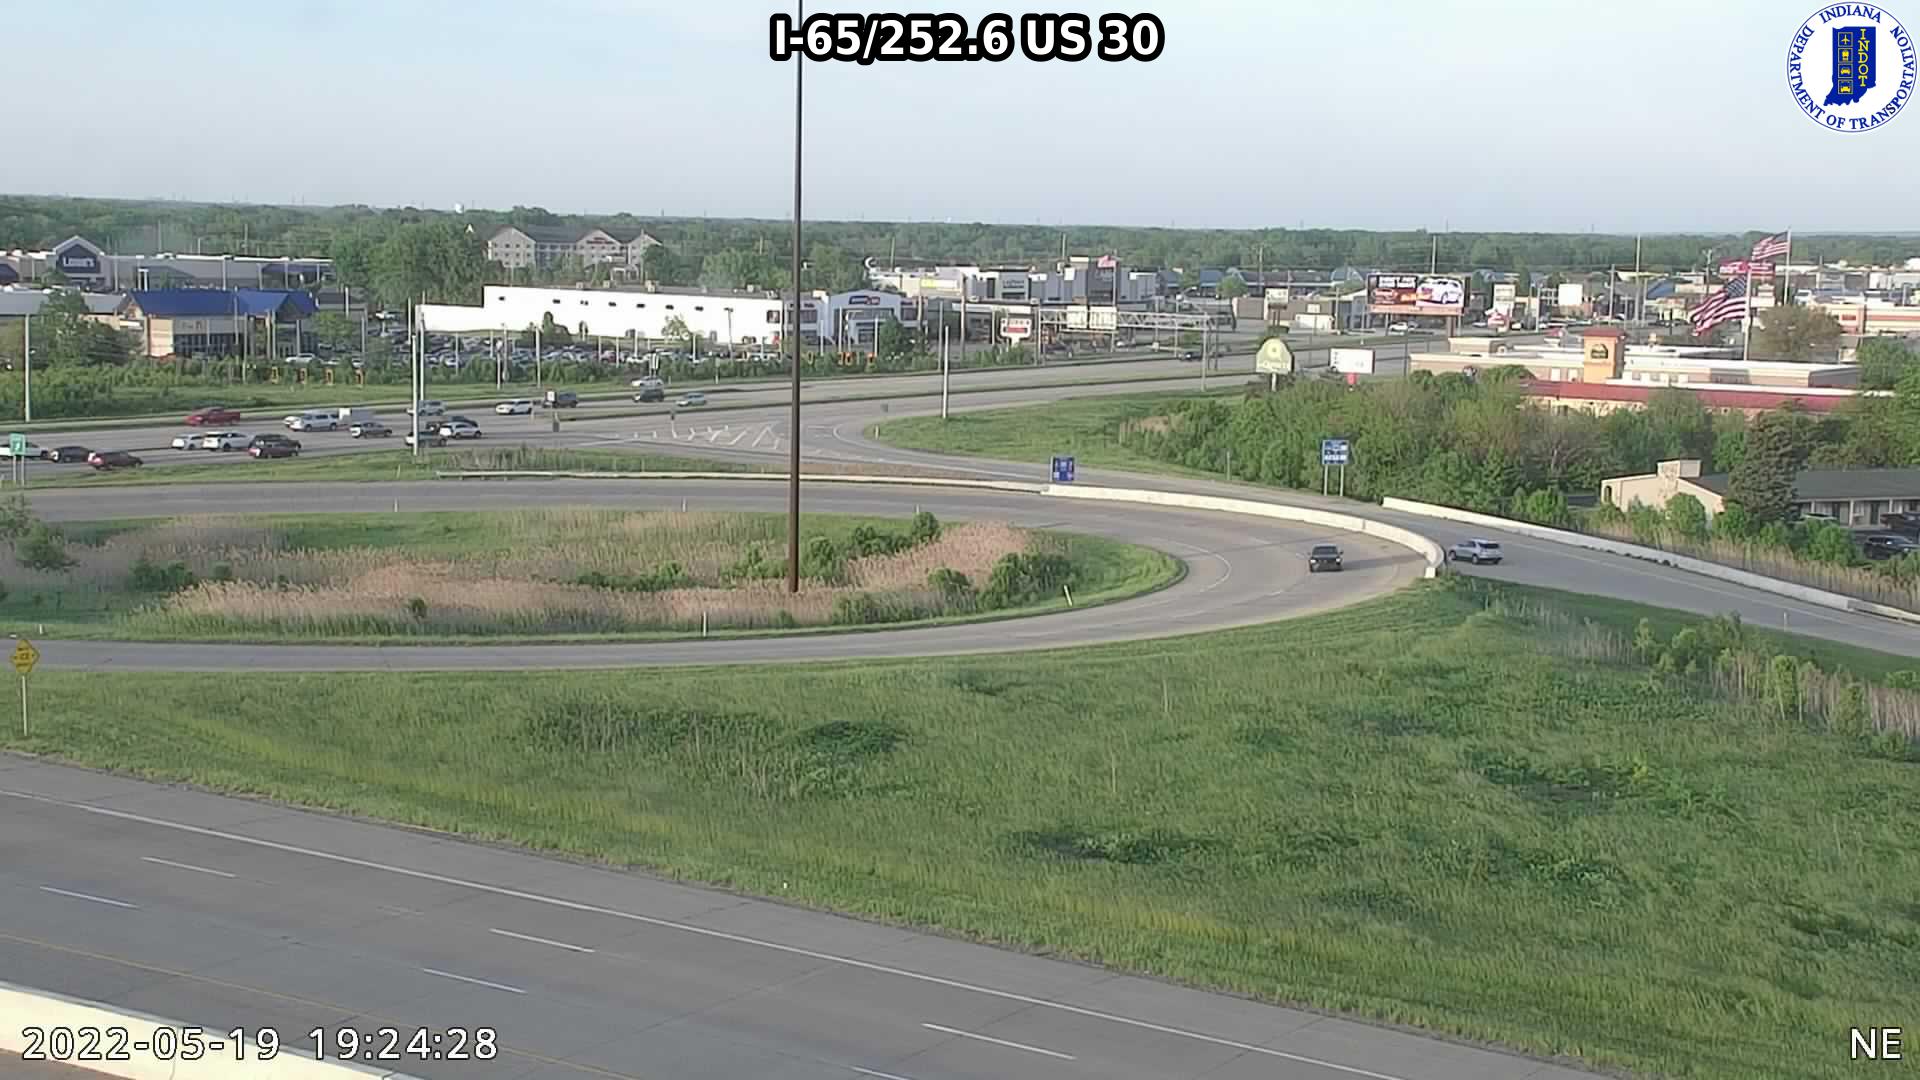 I-65/99.4  Main St/Greenwood  (109) () - Indiana